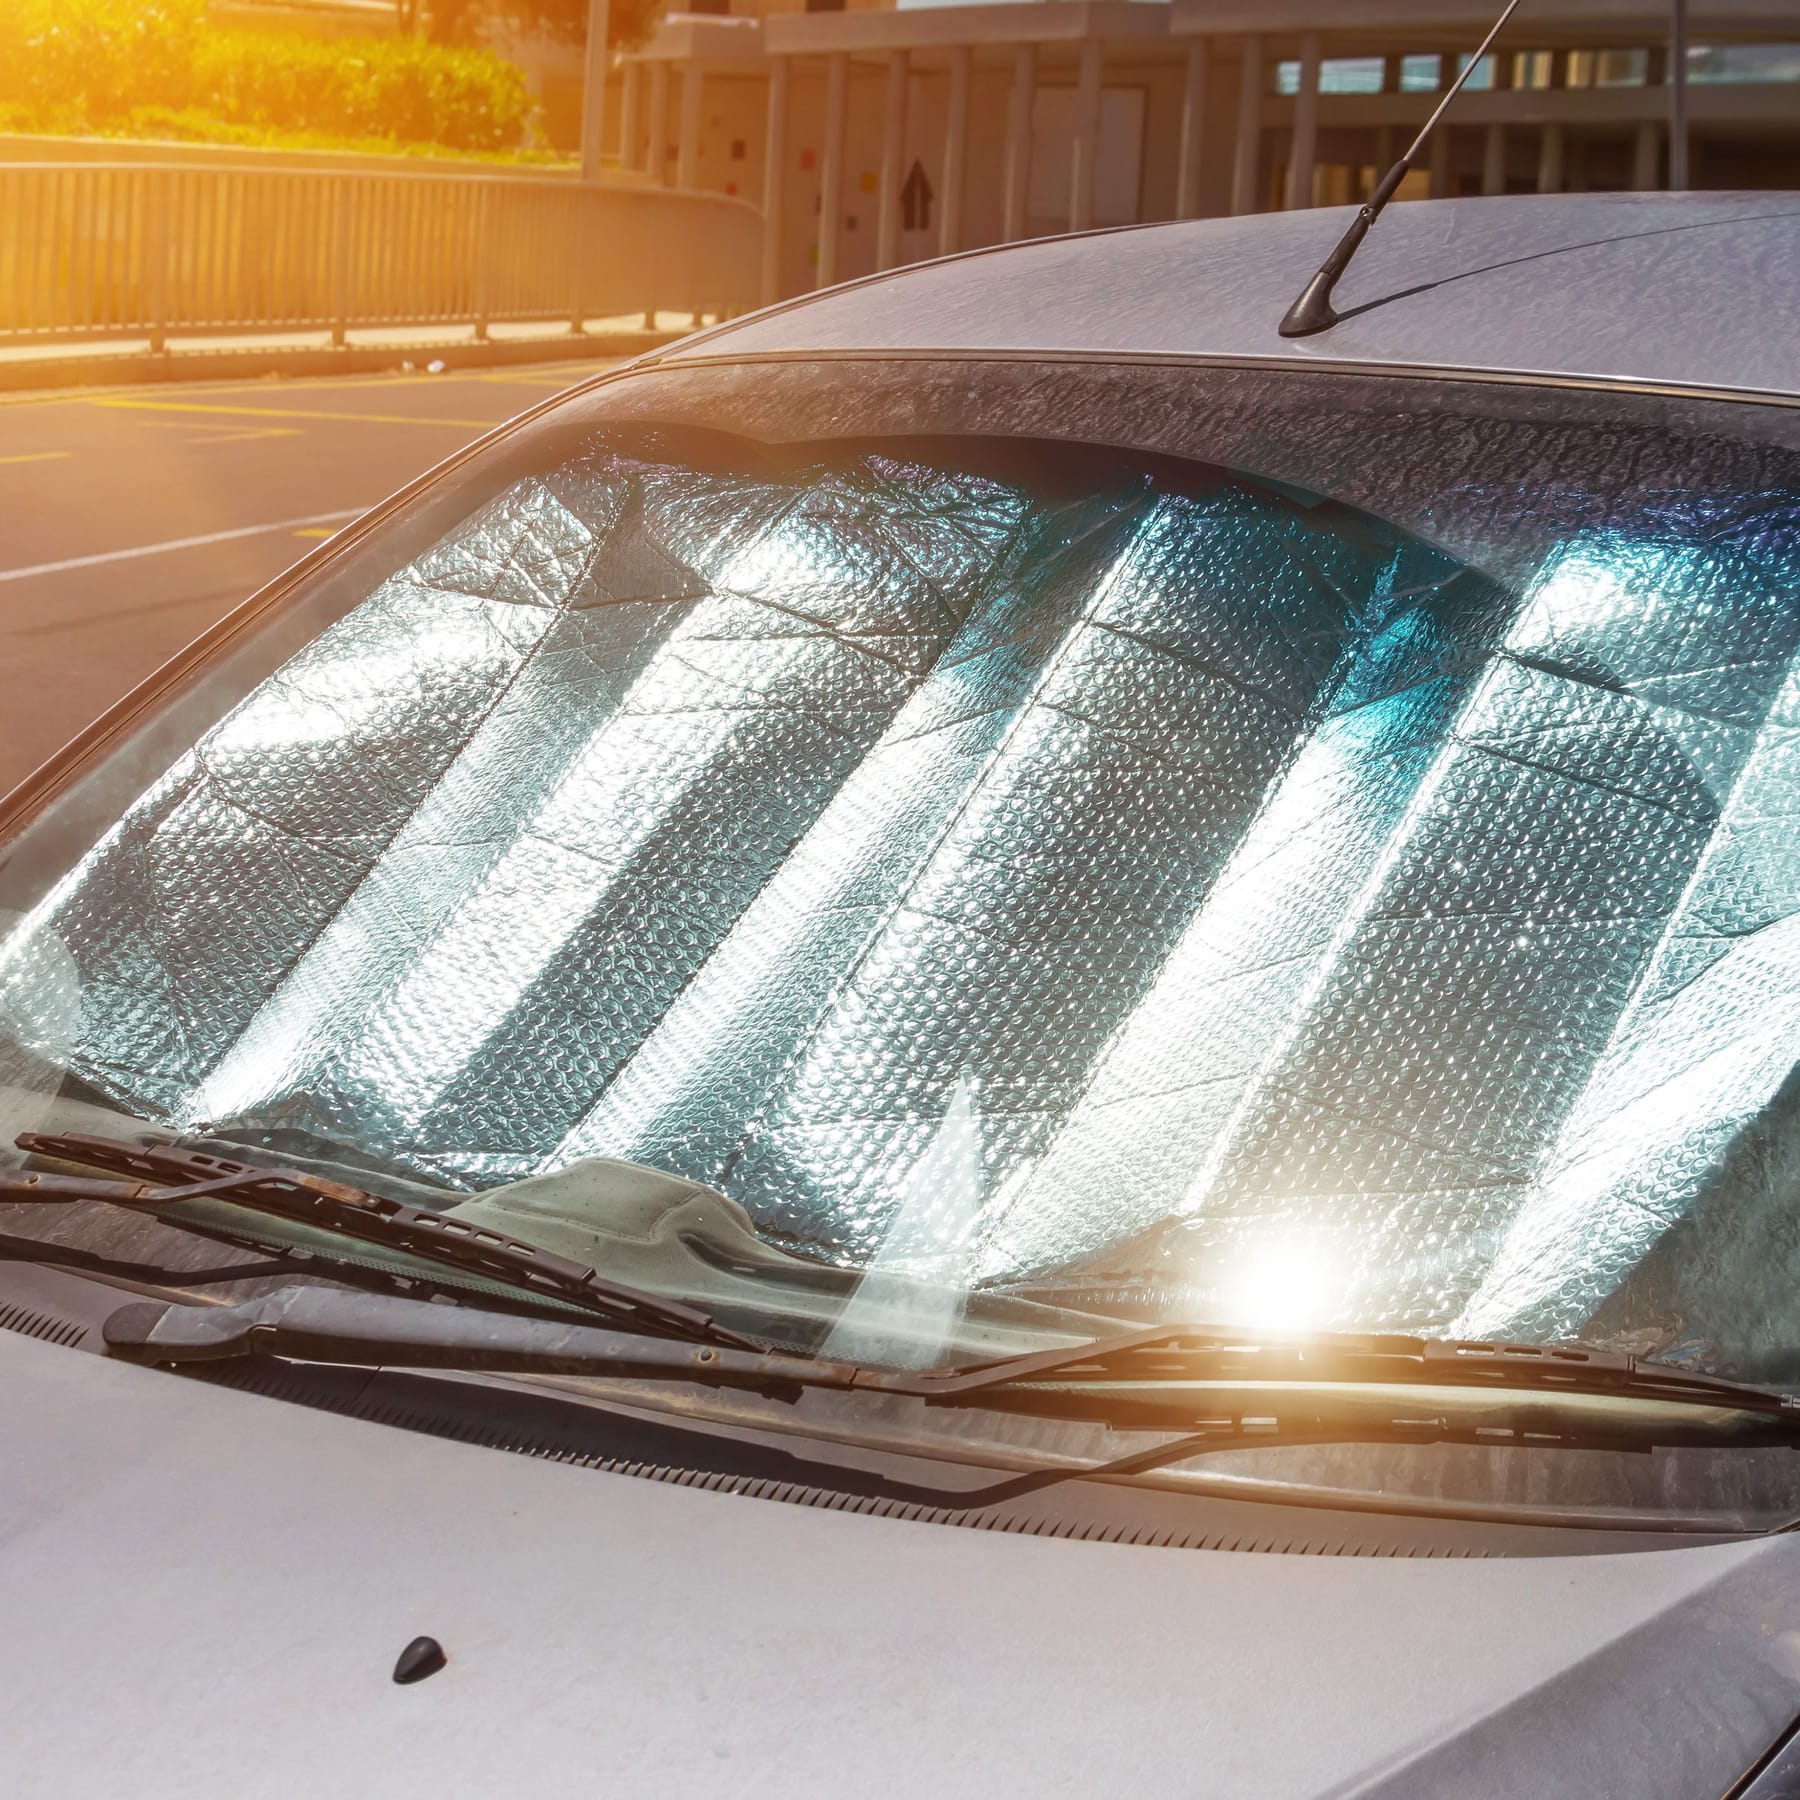 Aldi-Angebot gegen Hitze im Auto: Sonnenschutz für die Frontscheibe